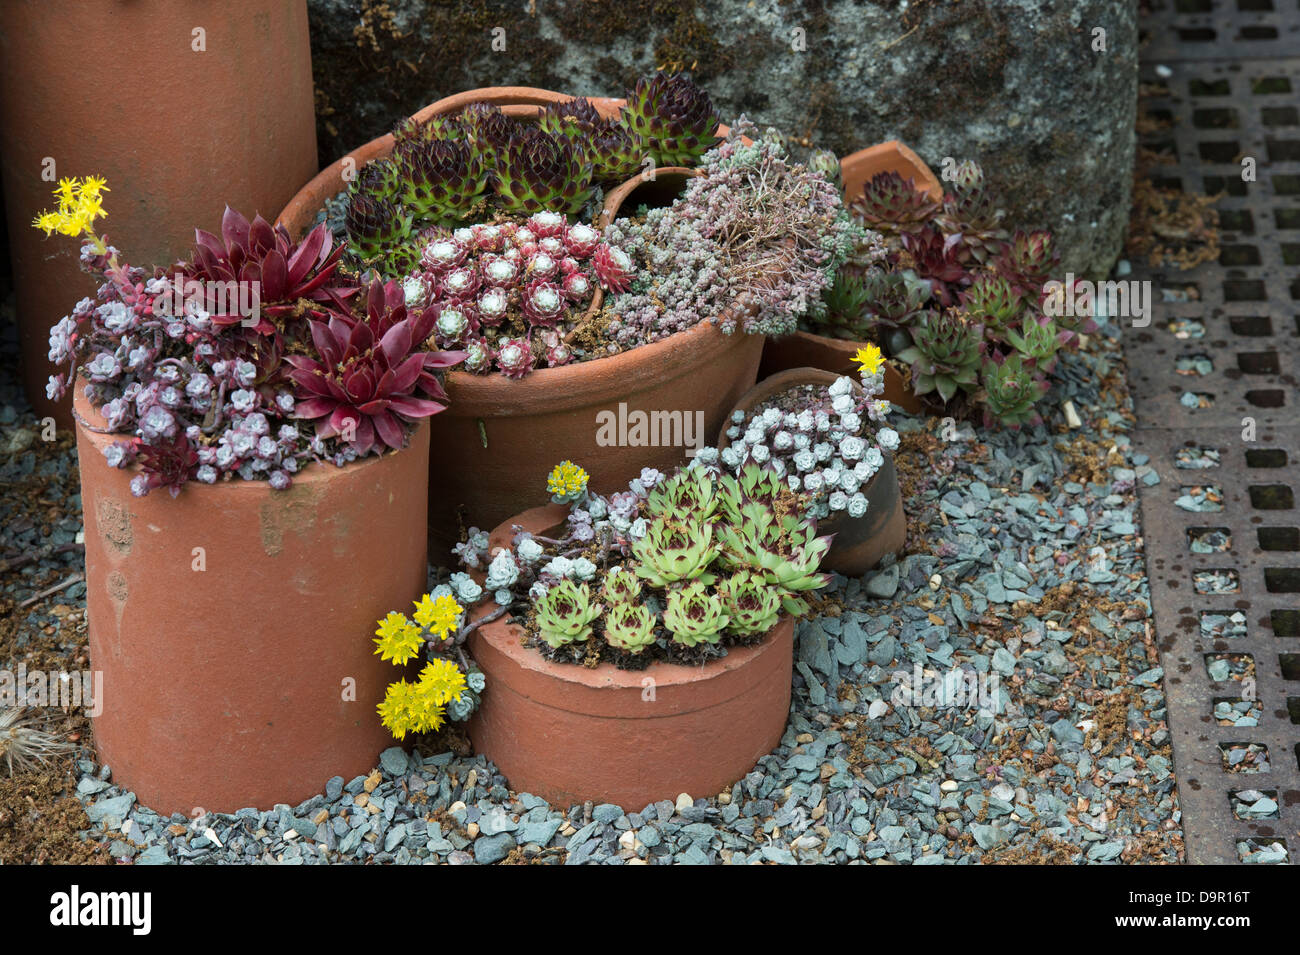 Sempervivum. Houseleek afficher dans les pots de fleurs à RHS Wisley Gardens. L'Angleterre Banque D'Images